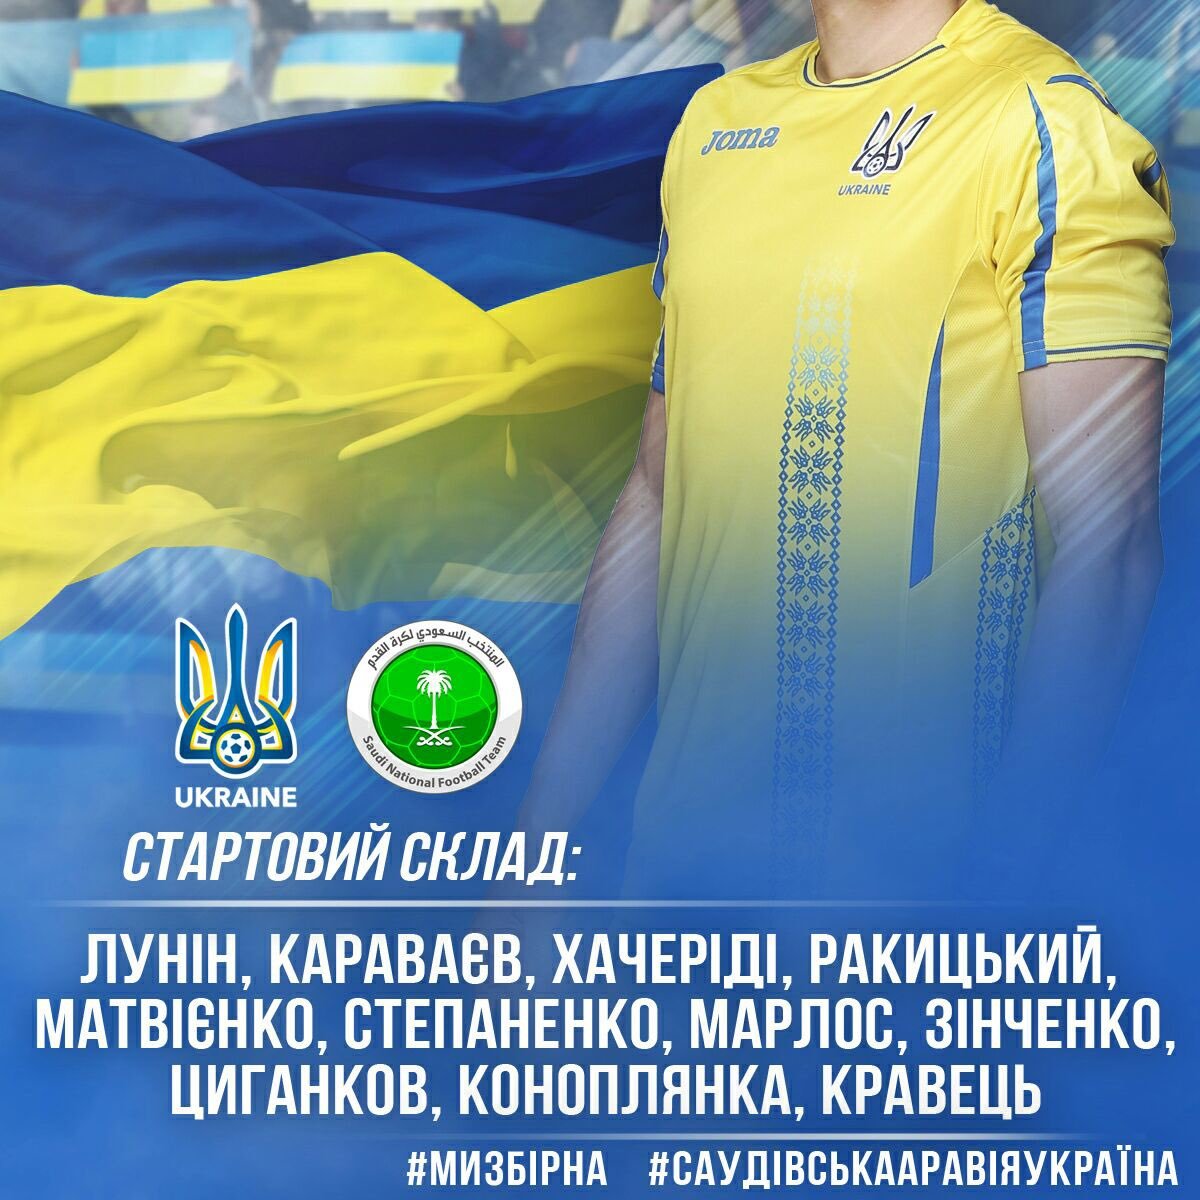 Саудовская Аравия - Украина: стартовый состав сборной Украины - изображение 1